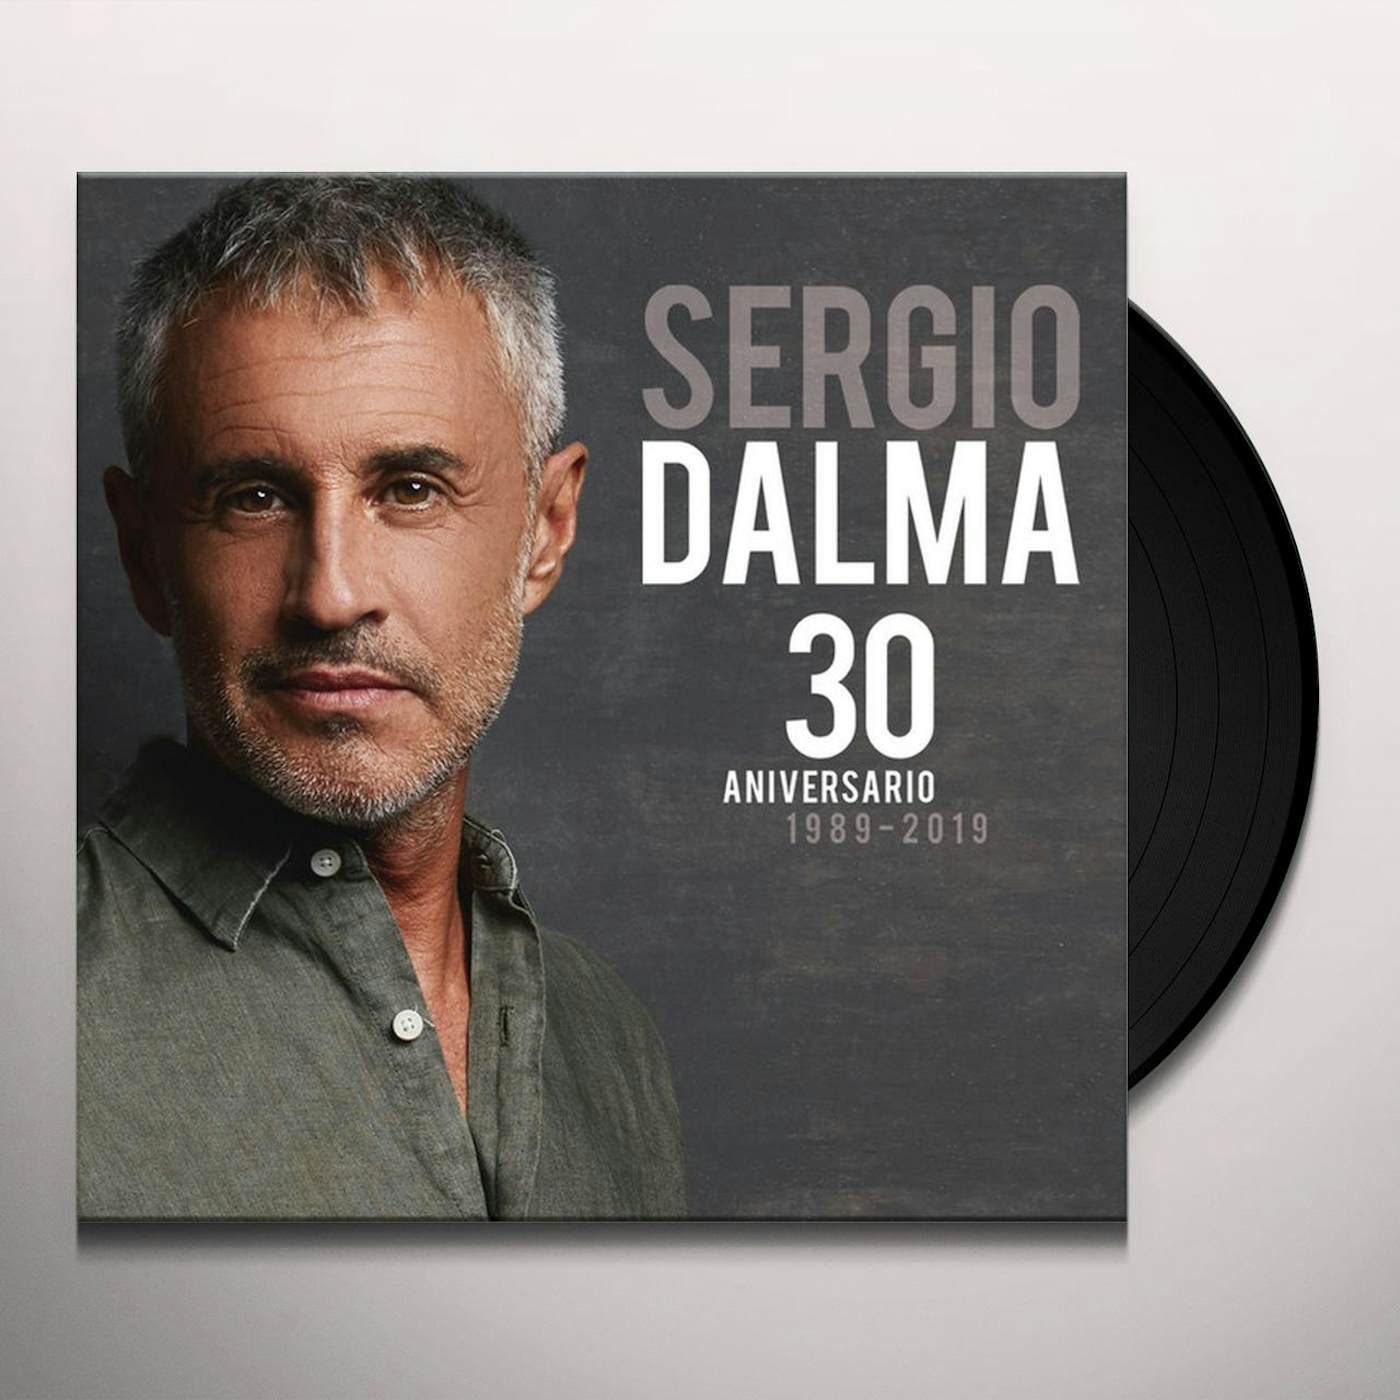 Sergio Dalma 30 ANIVERSARIO 1989-2019 Vinyl Record